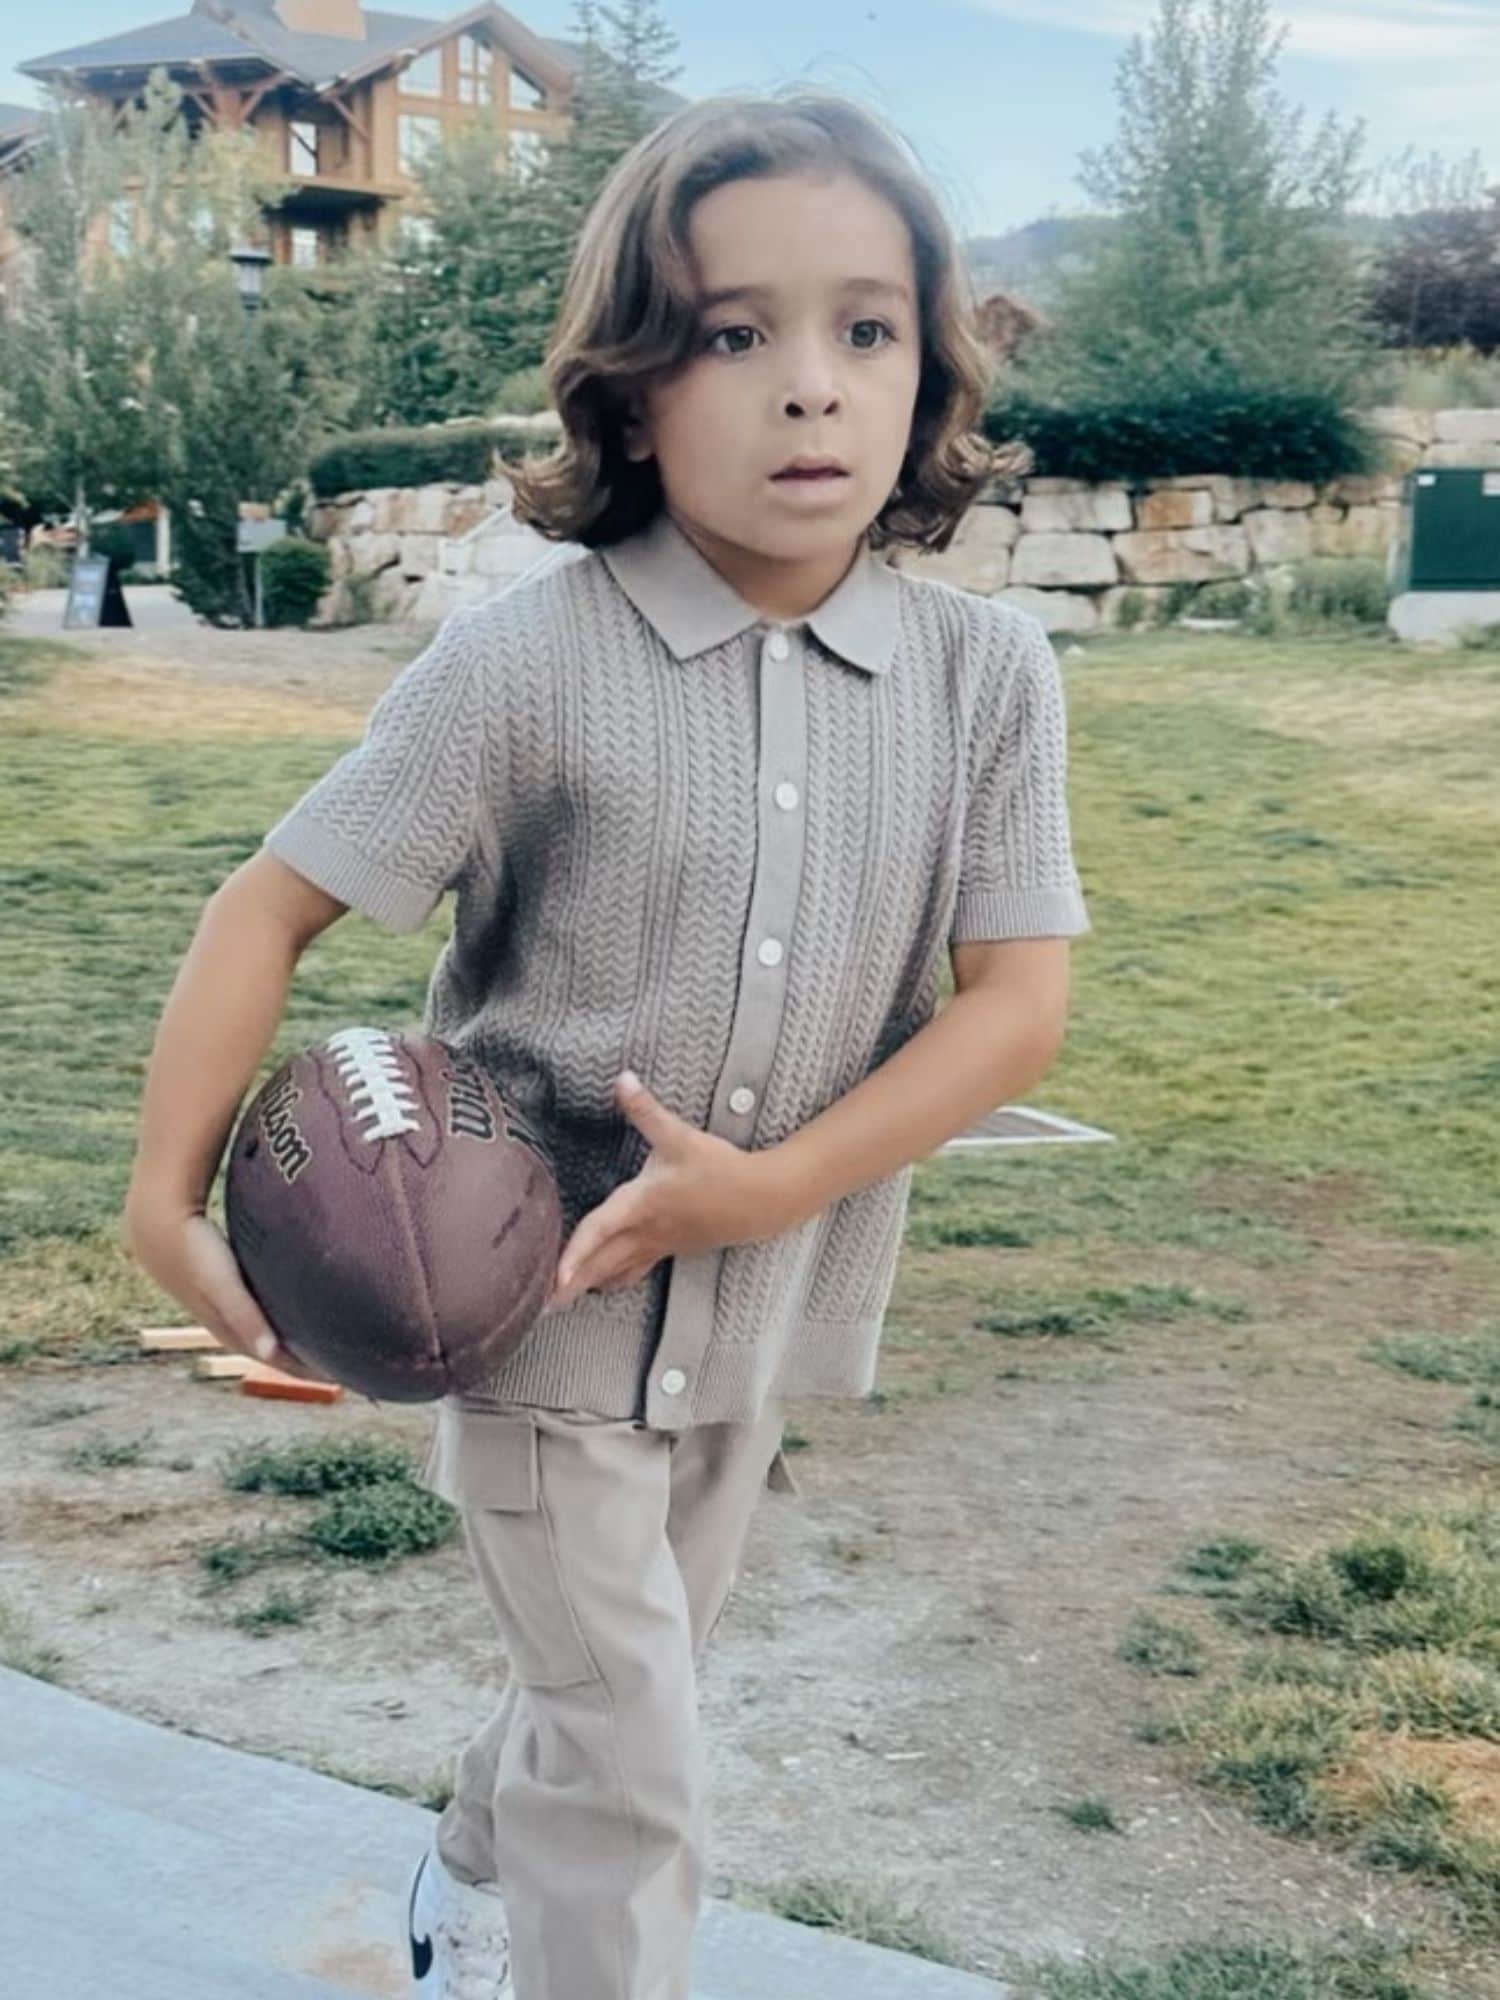 little boy carrying football